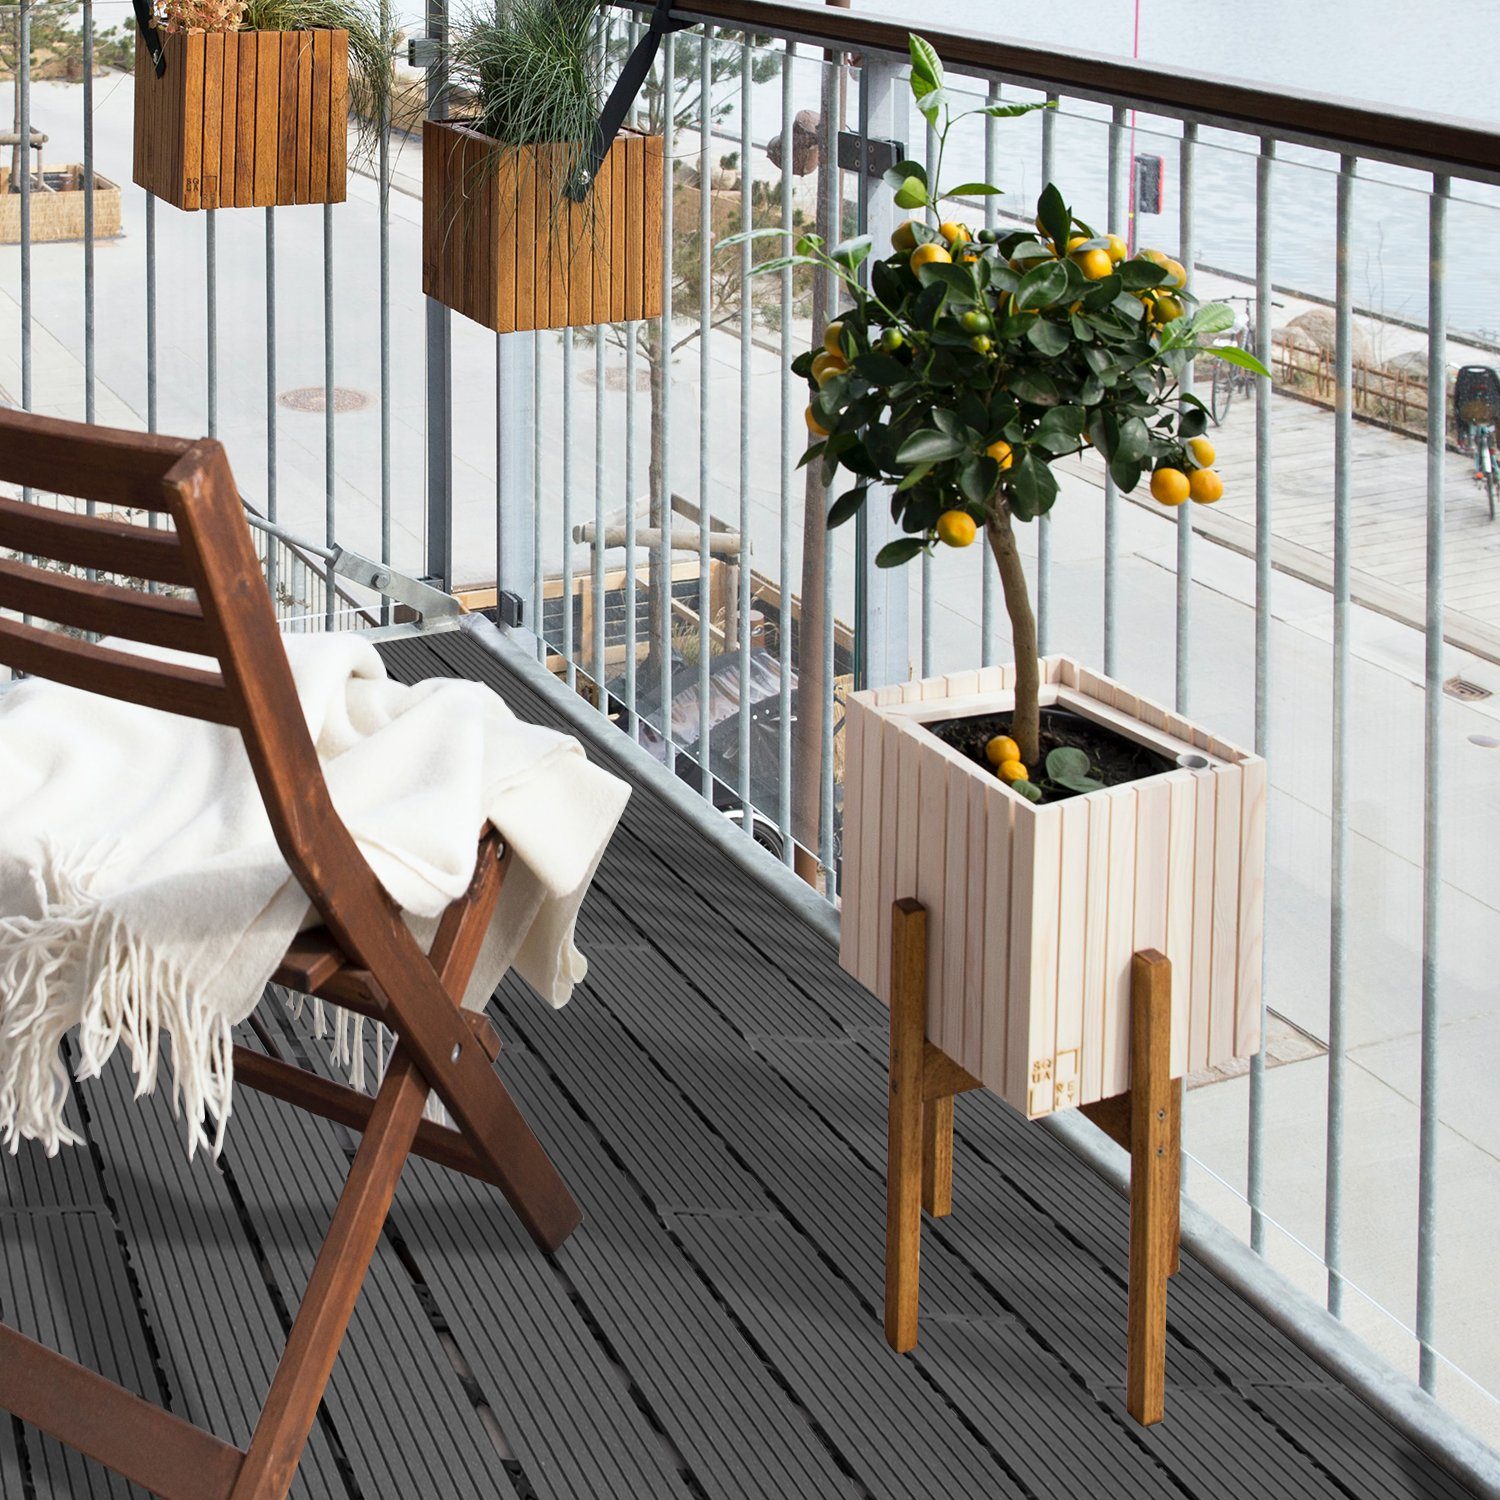 18er für Holzfliesen Stück 1-5m² Balkon Lospitch klicksystem Terrassen Holzfliesen, und mit 6-30 Anthrazit WPC Terrassendielen Fliesen 60x30 cm